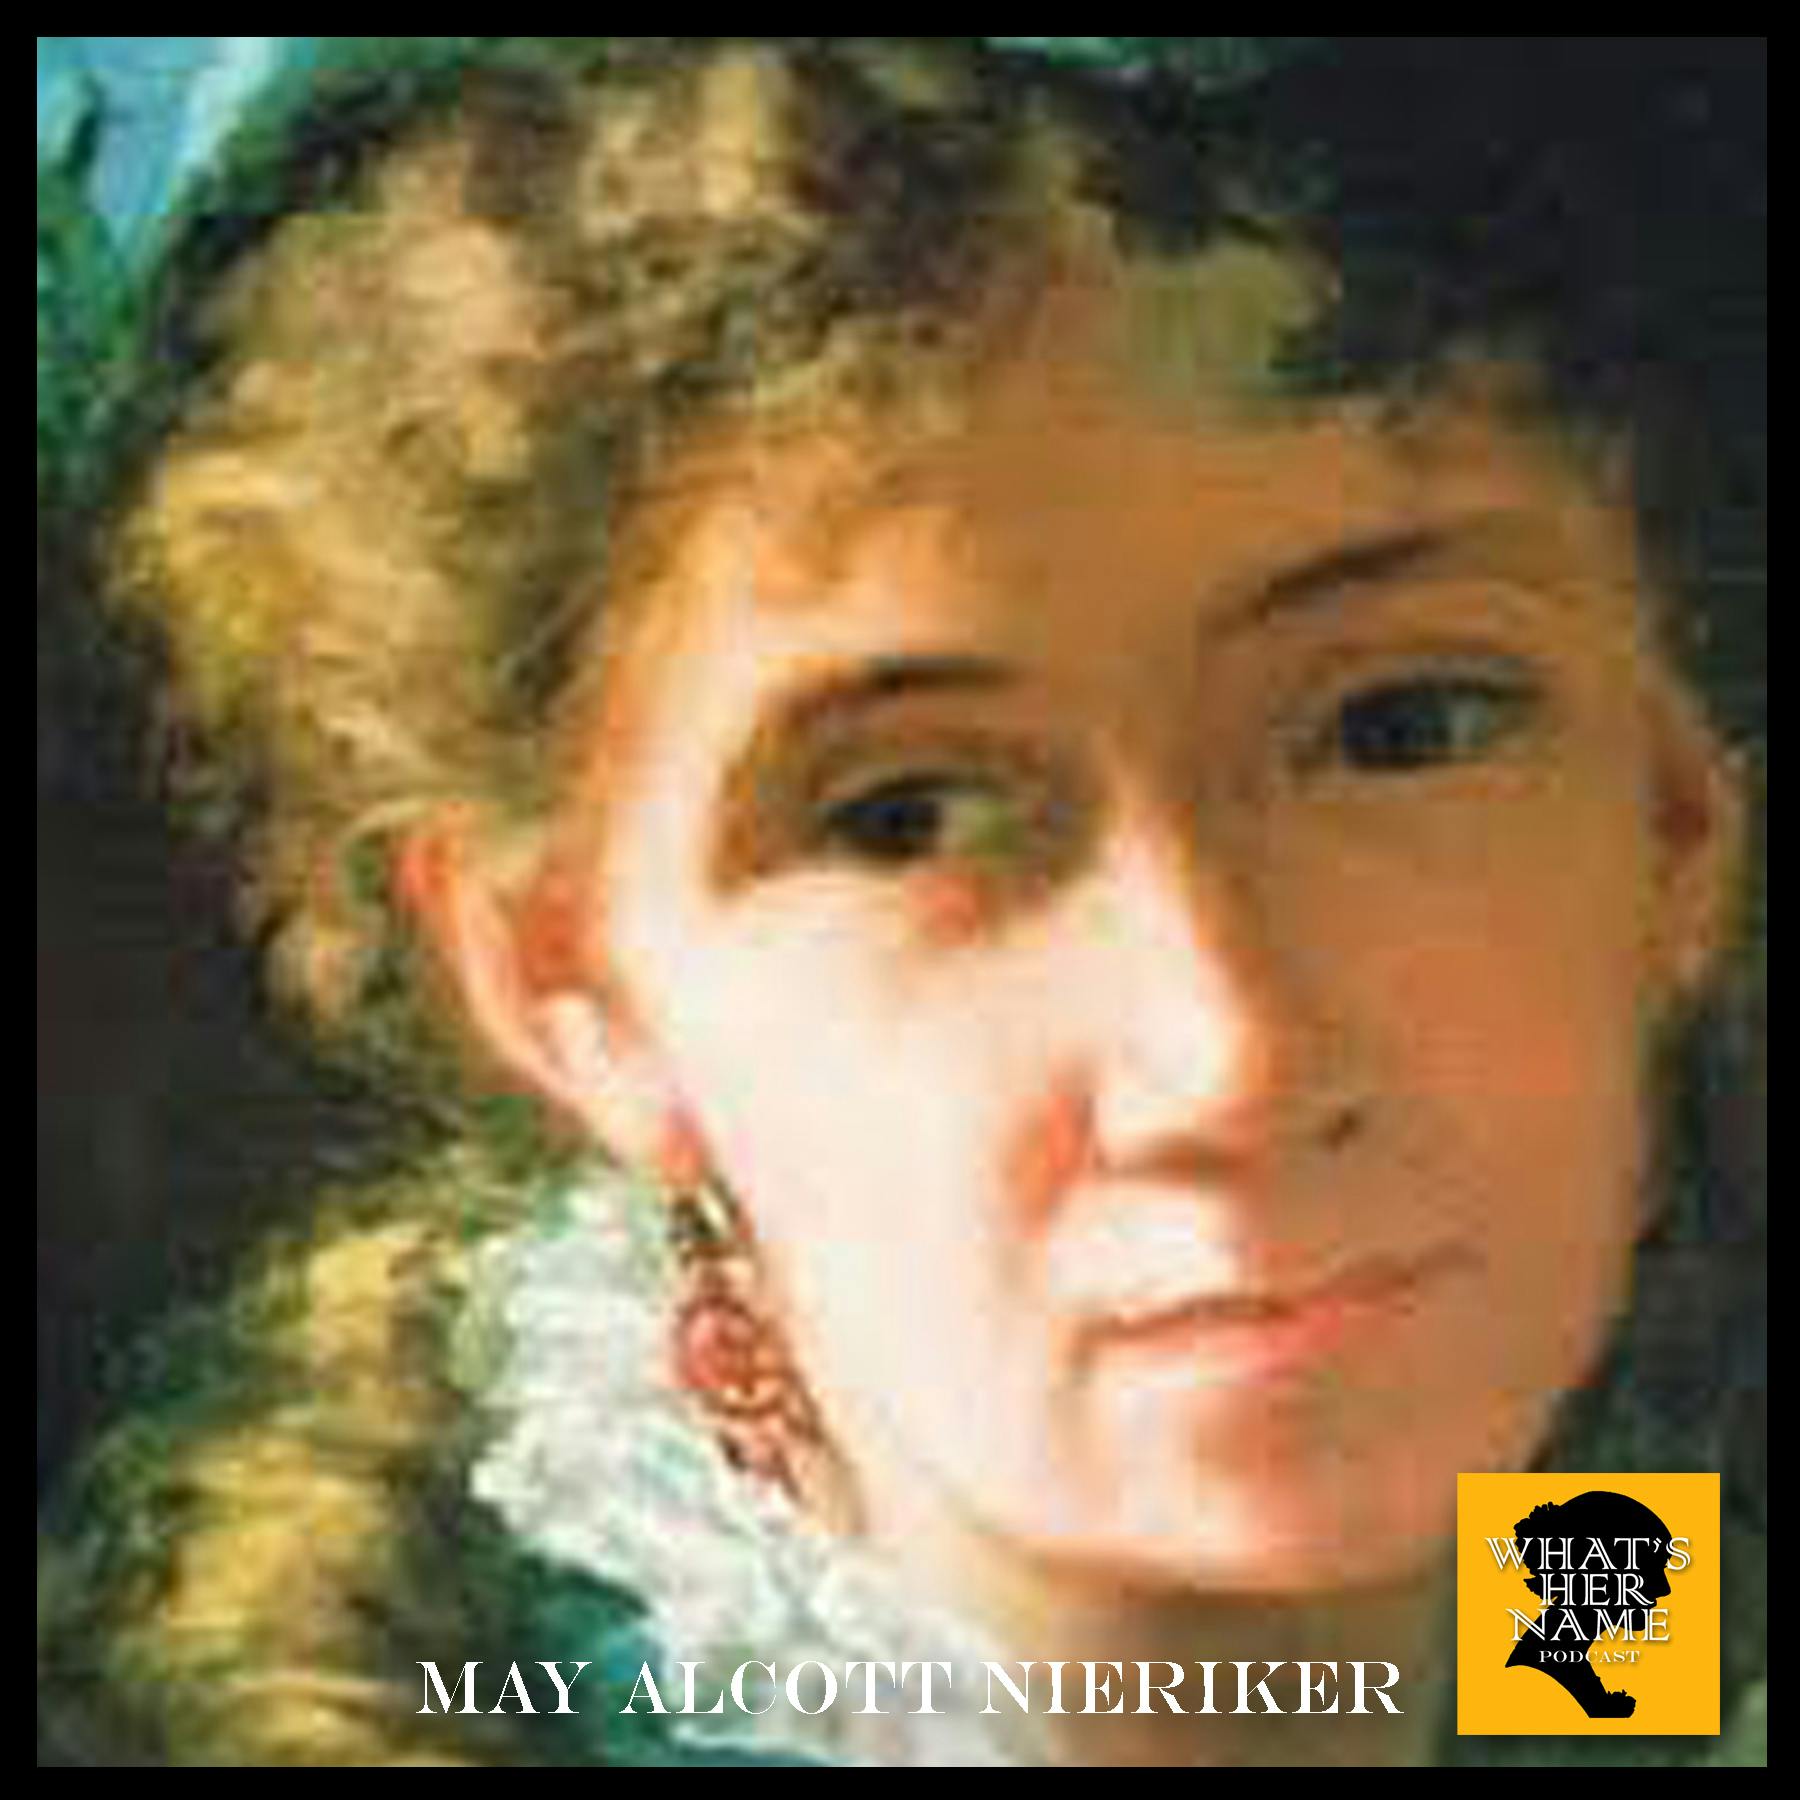 THE LITTLE WOMAN May Alcott Nieriker